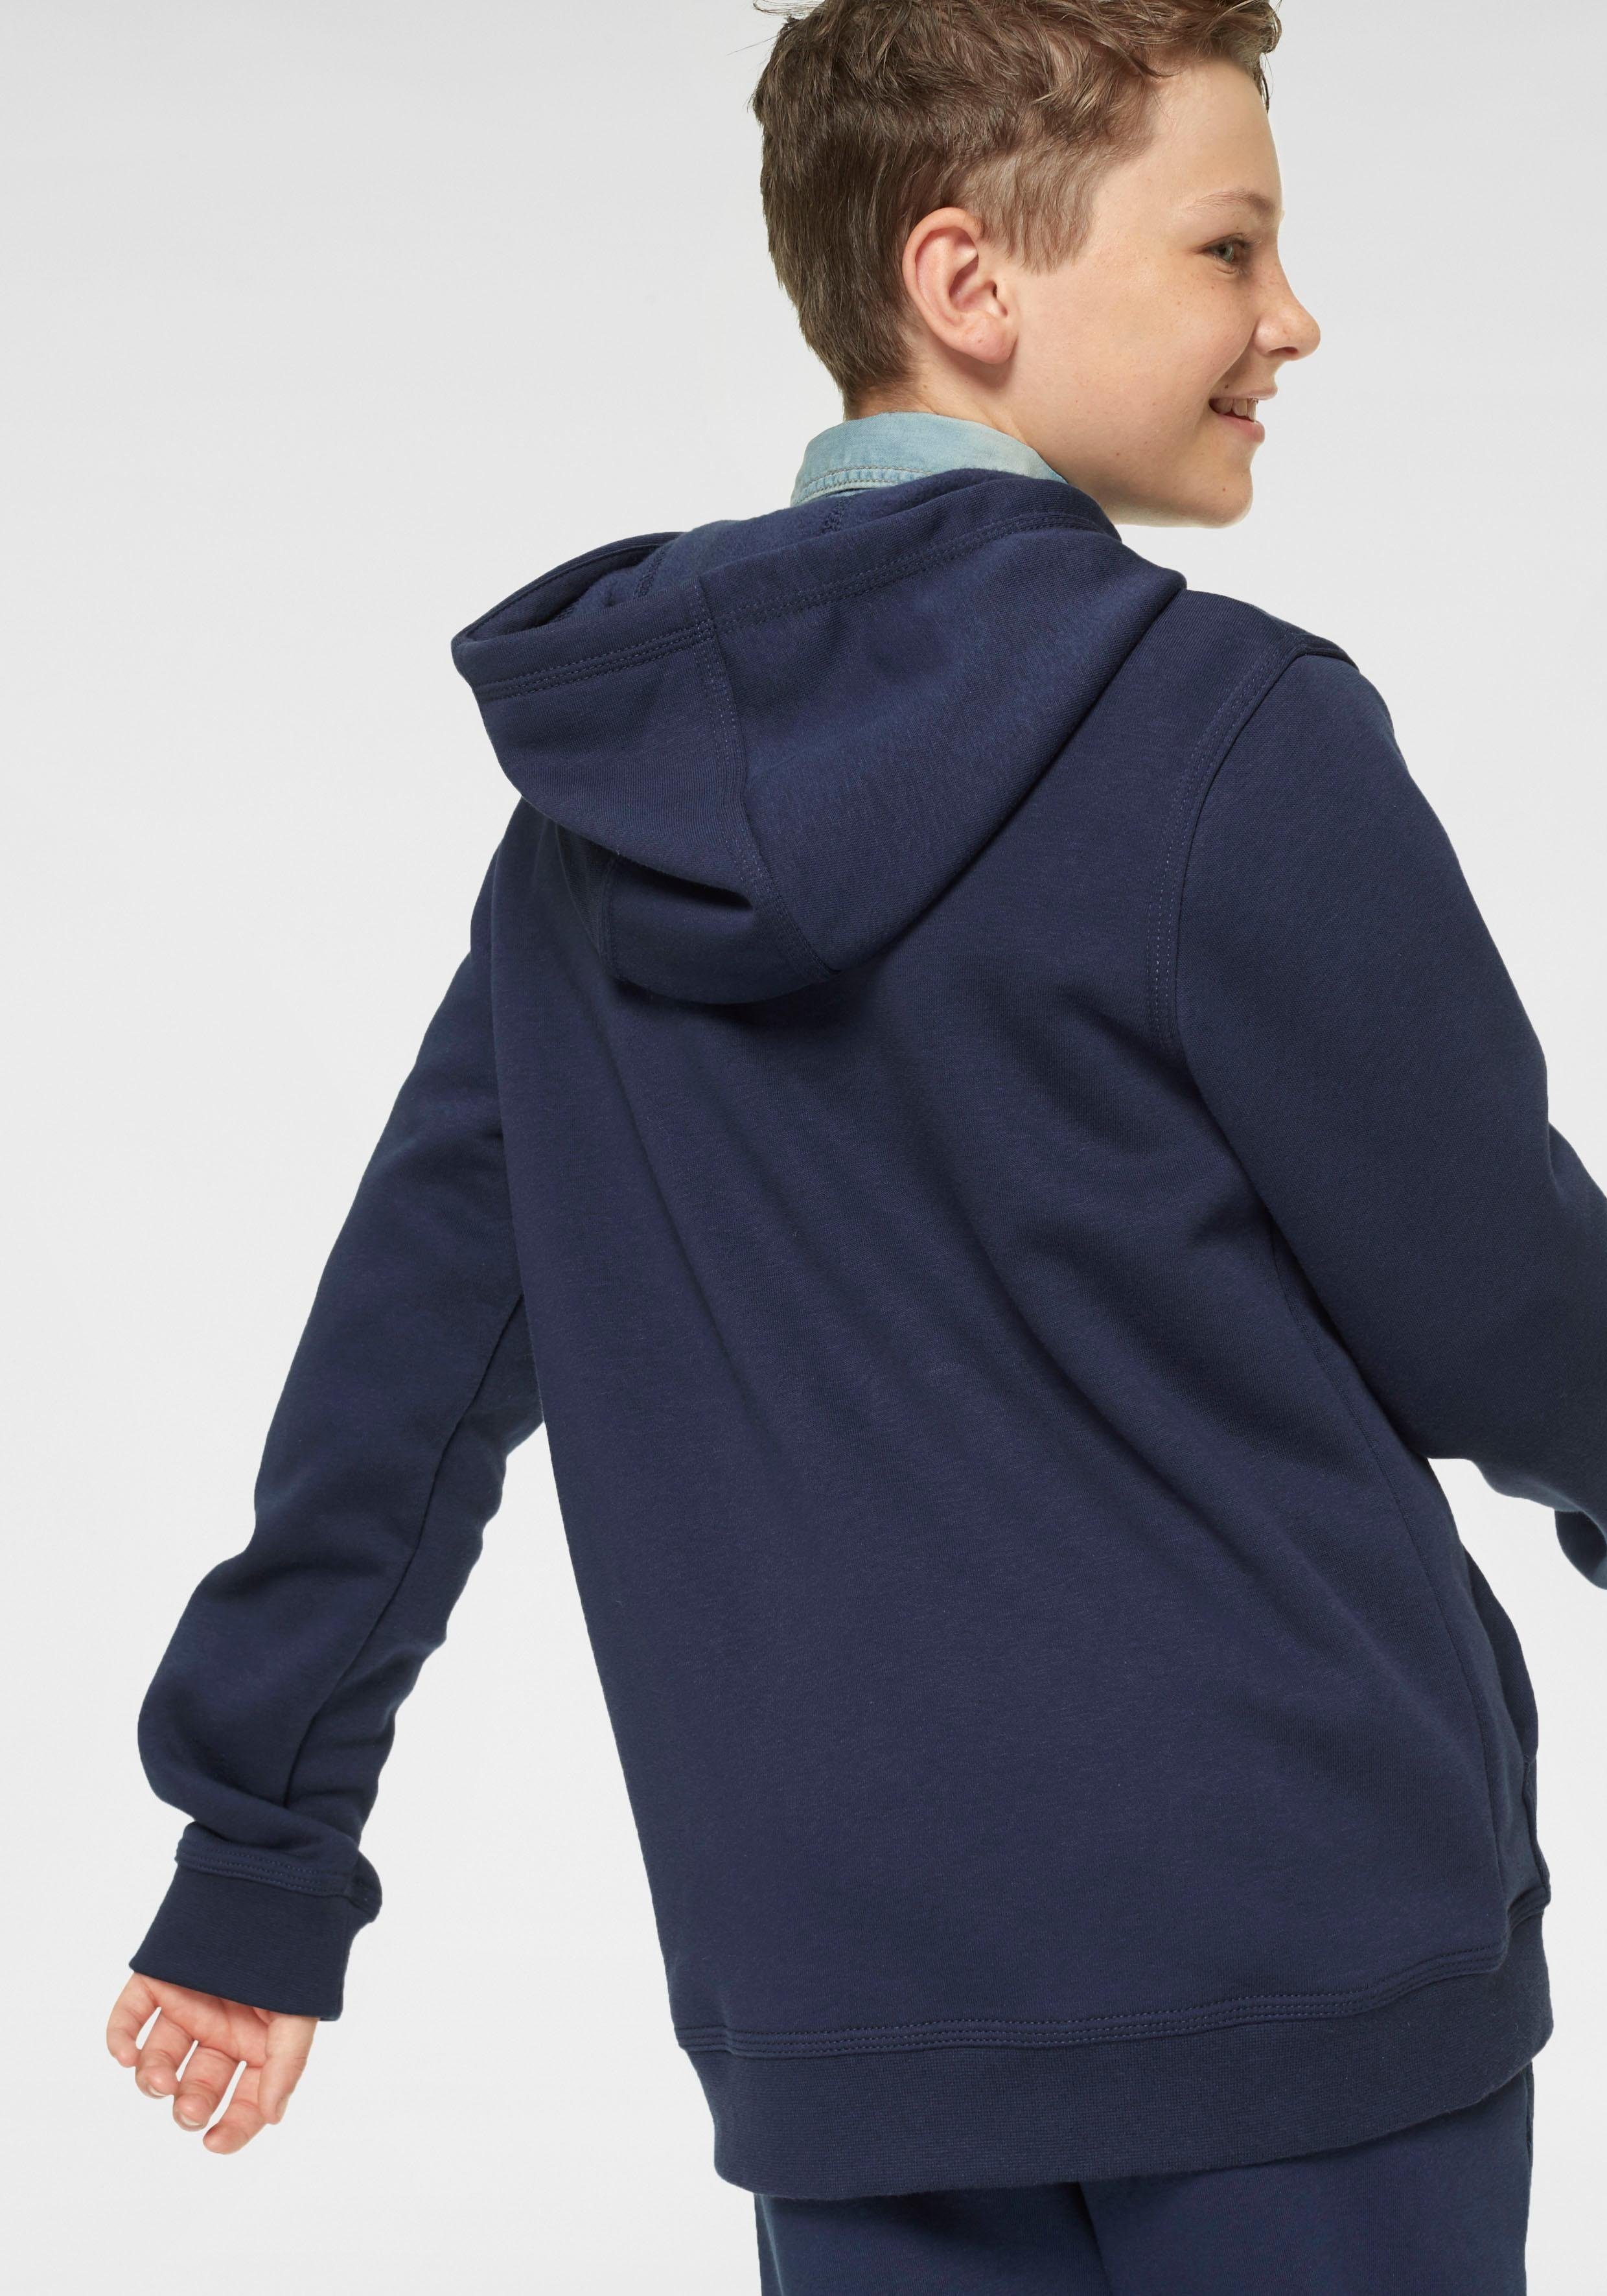 Kapuzensweatjacke NSW Kinder dunkelblau FZ HOODIE für CLUB - Nike Sportswear